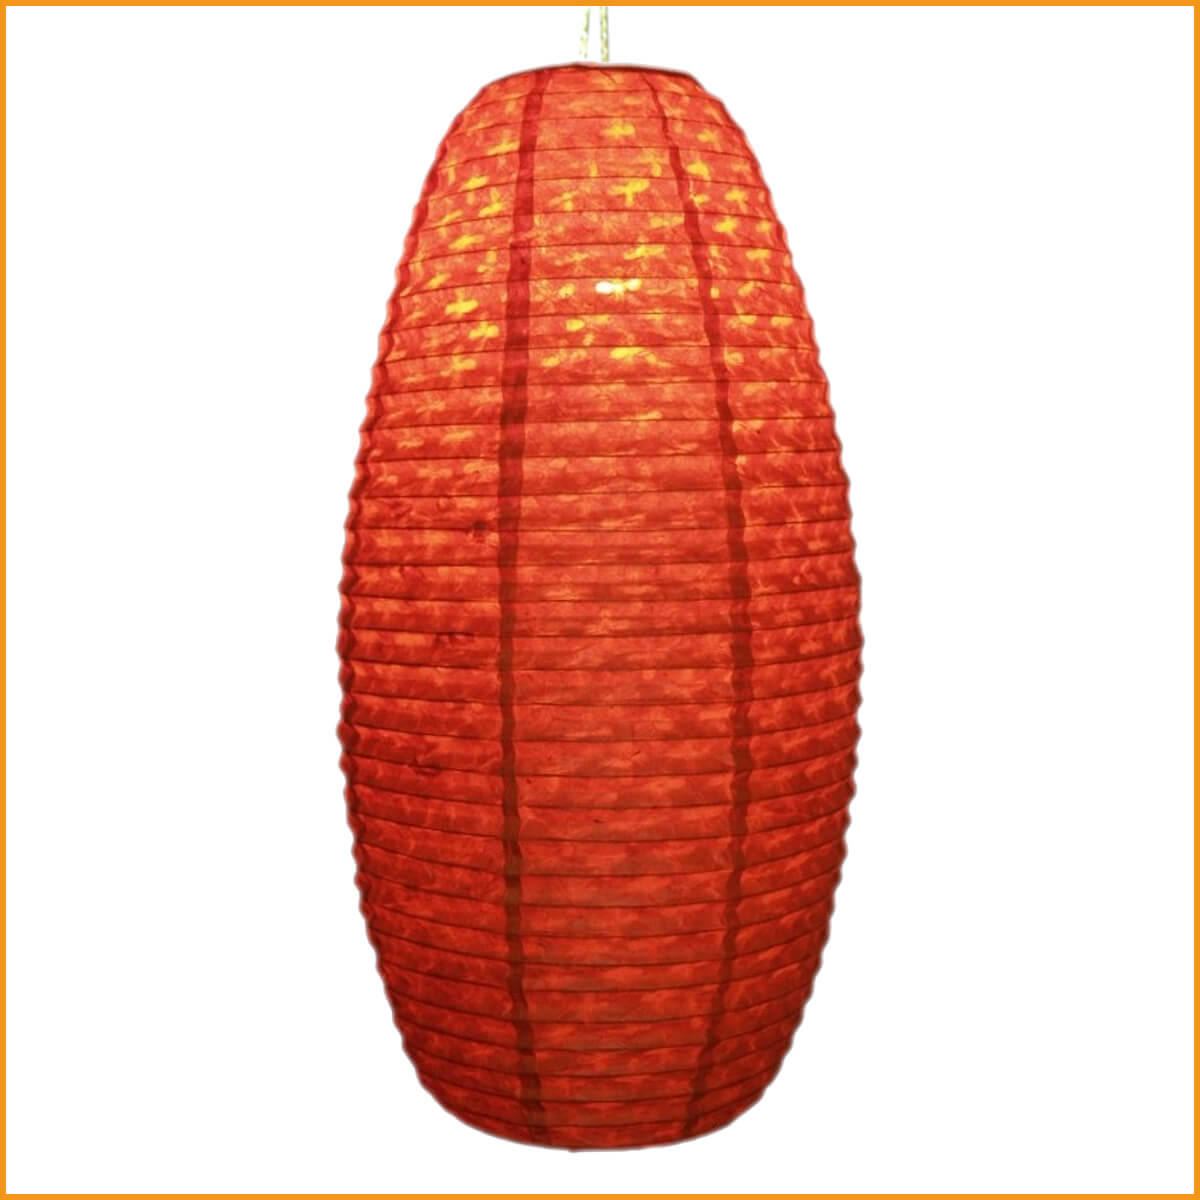 Ovale Lokta Papierlampe Hängelampe - orange Blume - Orissa Lampe Nepal